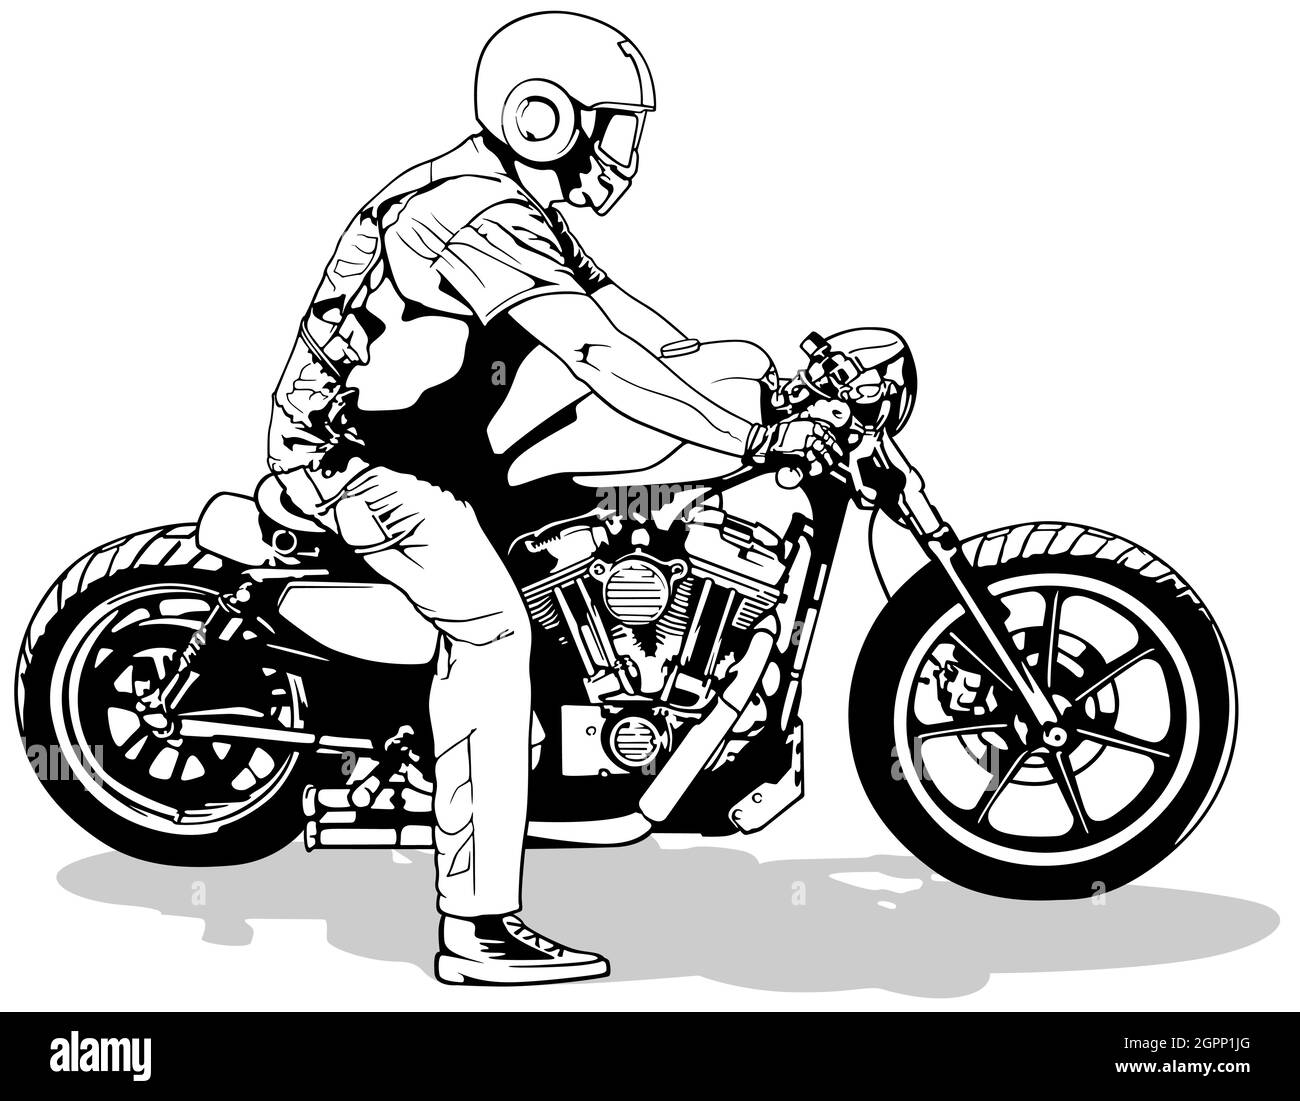 Biker zeichnung Schwarzweiß-Stockfotos und -bilder - Alamy